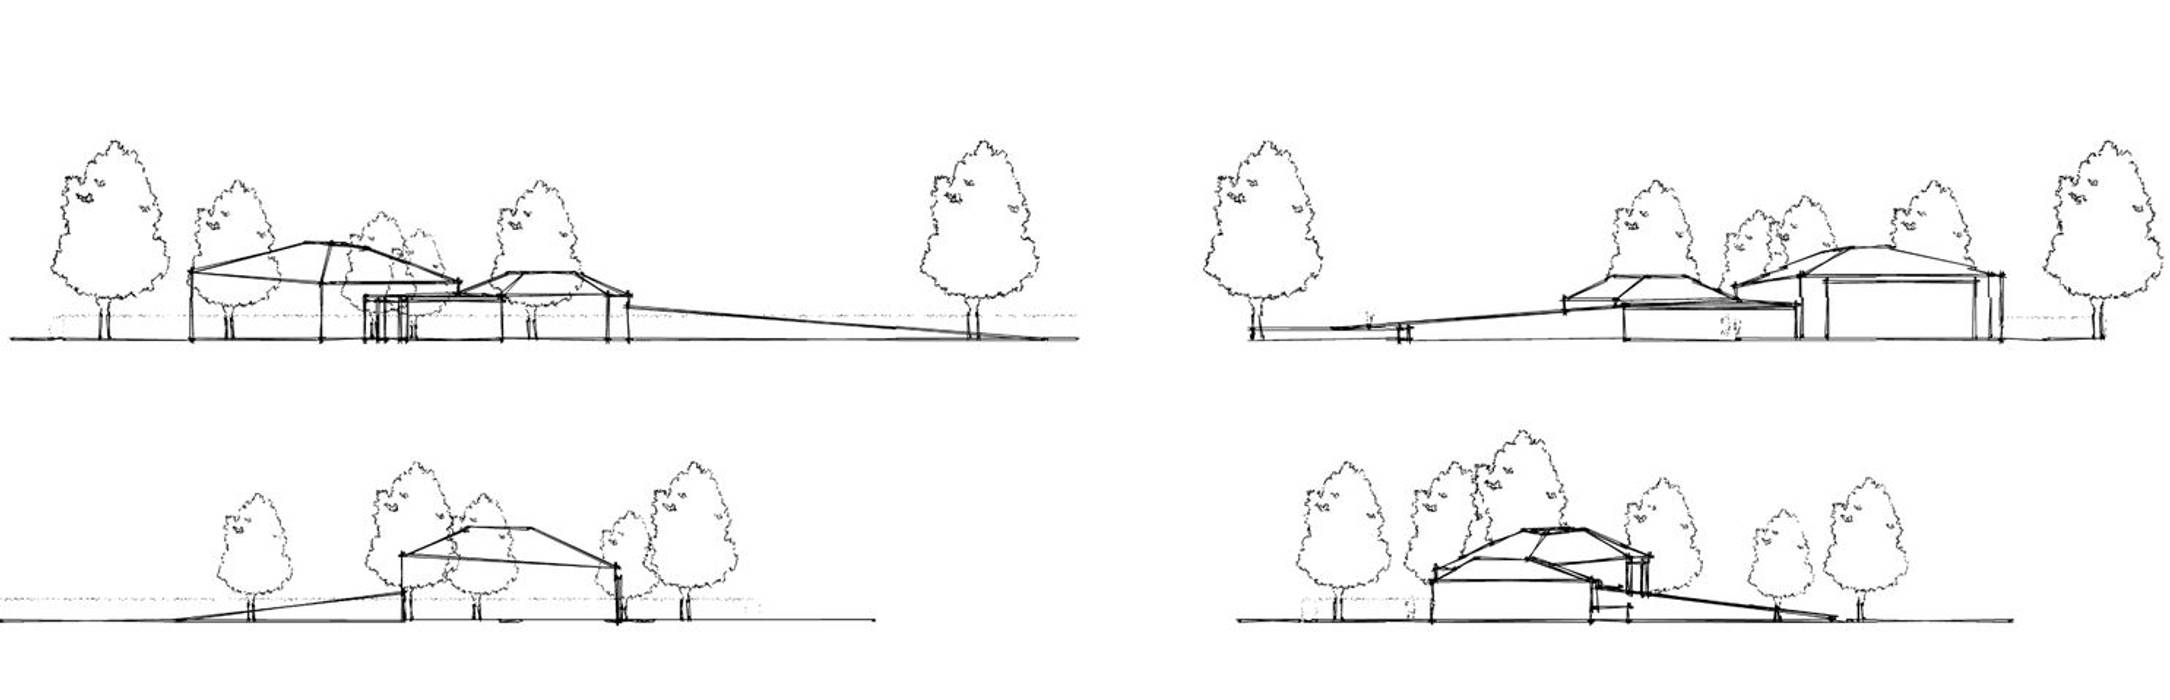 Concept sketches guy taylor associates Maisons modernes Bois Effet bois sketch